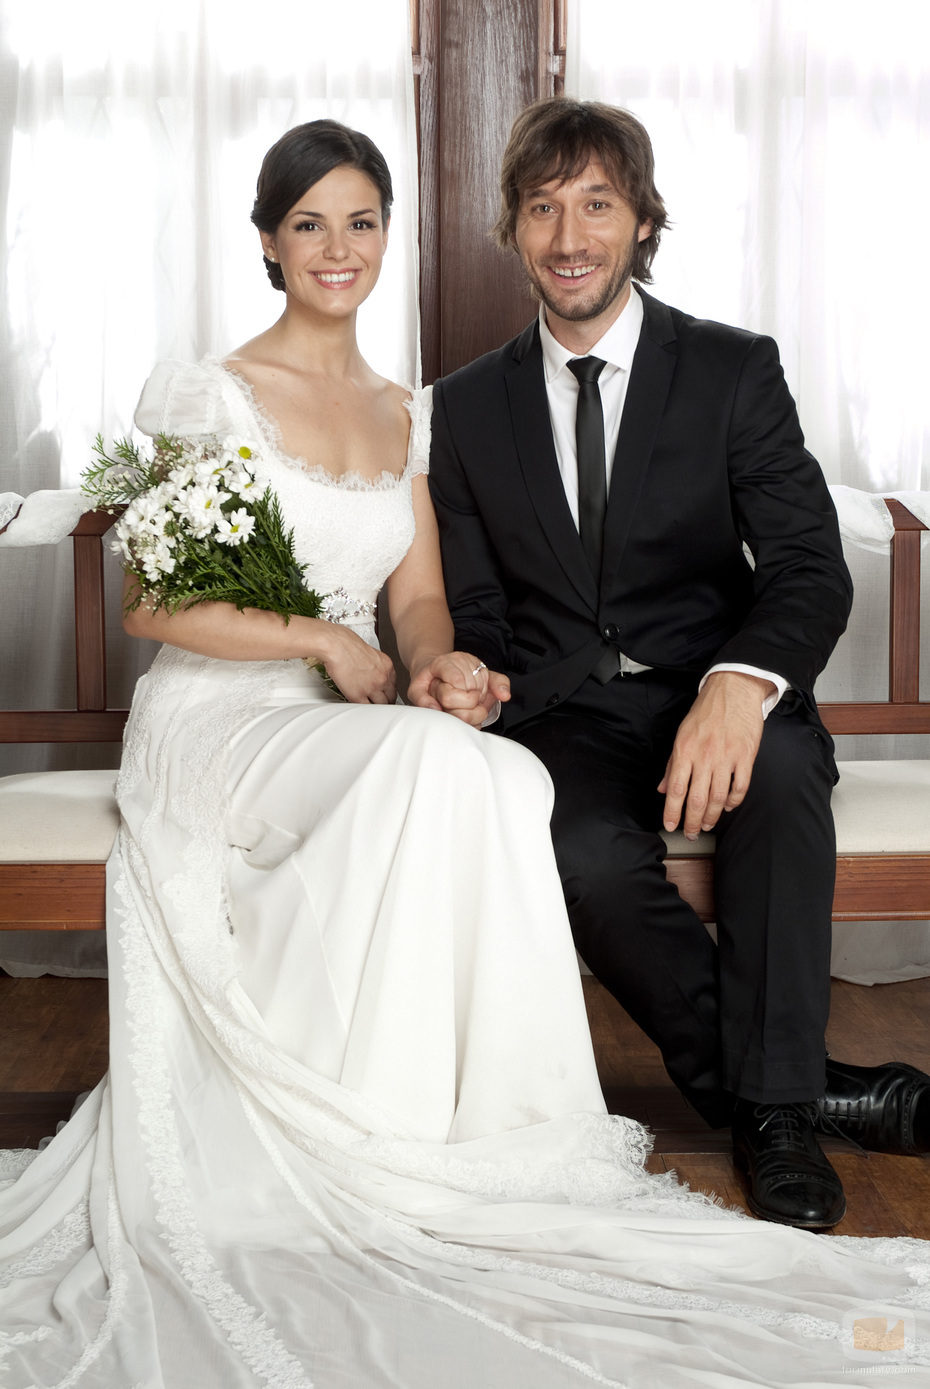 Fermín y María posan sonrientes tras casarse en 'El internado'